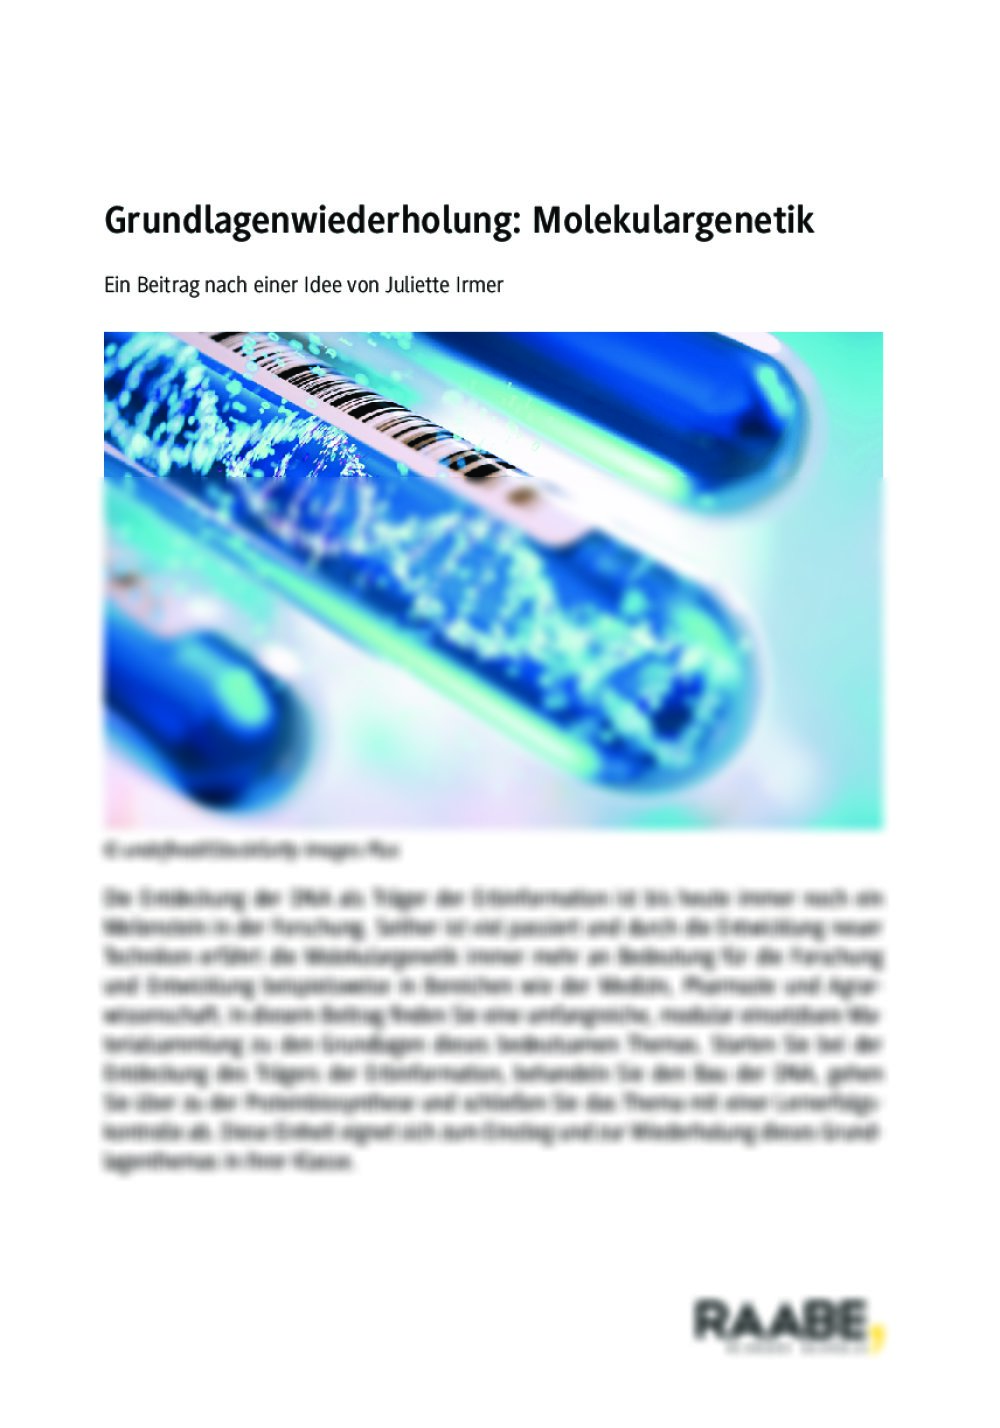 Grundlagenwiederholung:
Molekulargenetik - Seite 1